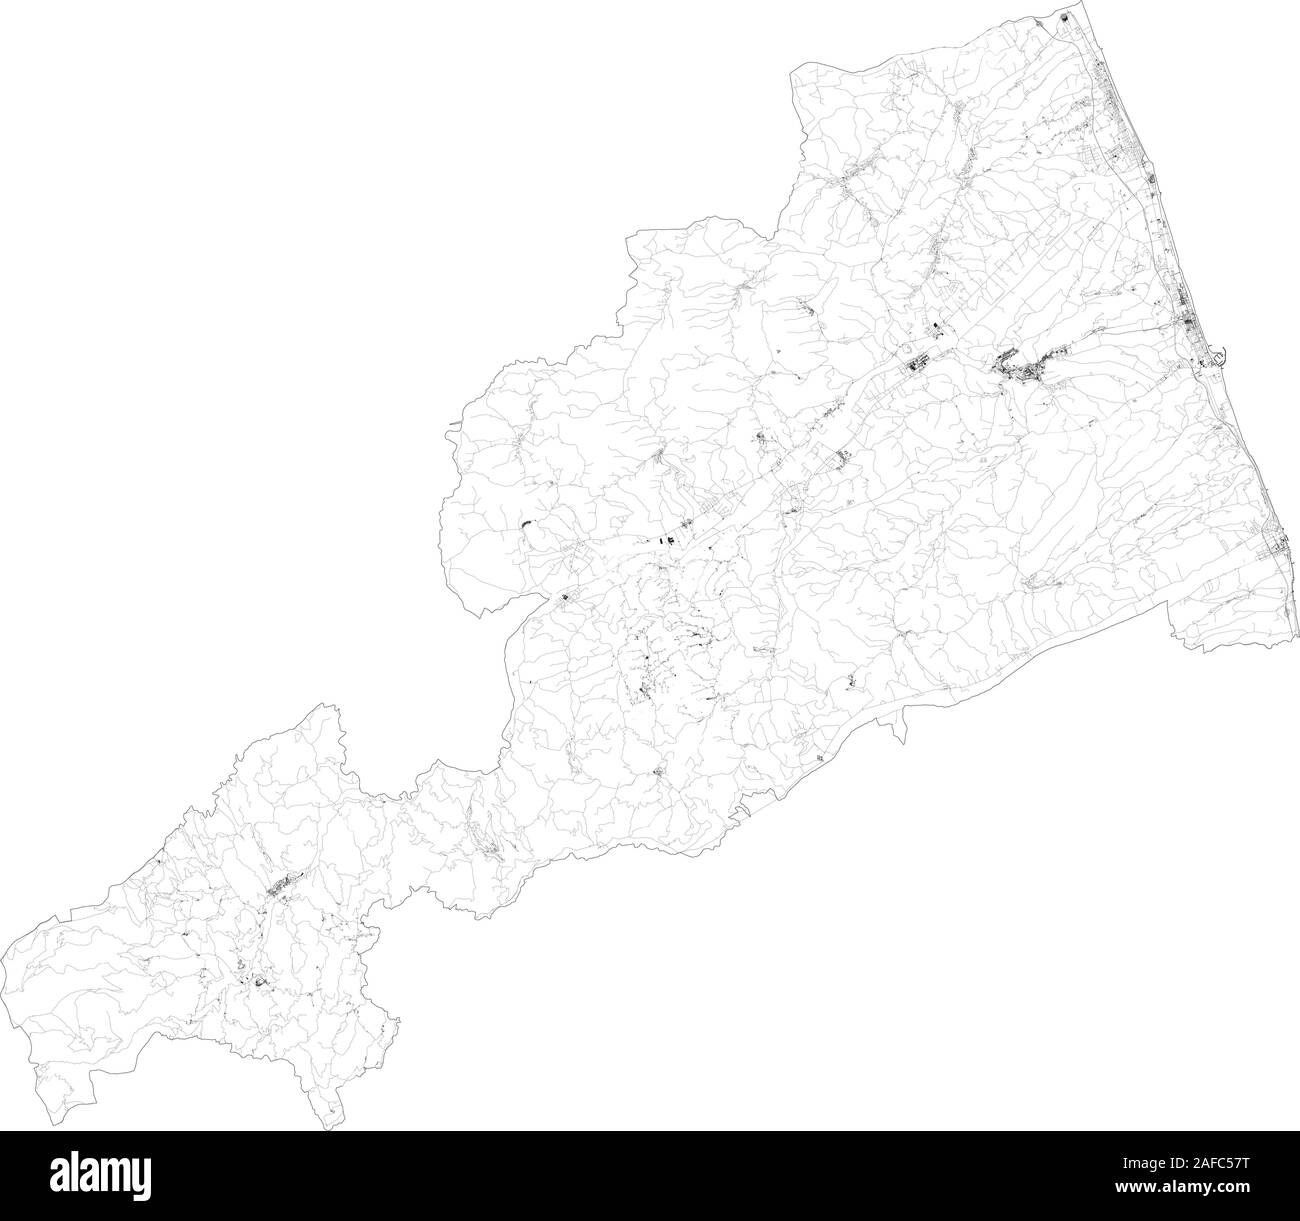 Mappa satellitare di provincia di Fermo città e strade, edifici e strade di collegamento delle aree circostanti. La regione Marche, Italia. Mappa strade, strade ad anello Illustrazione Vettoriale